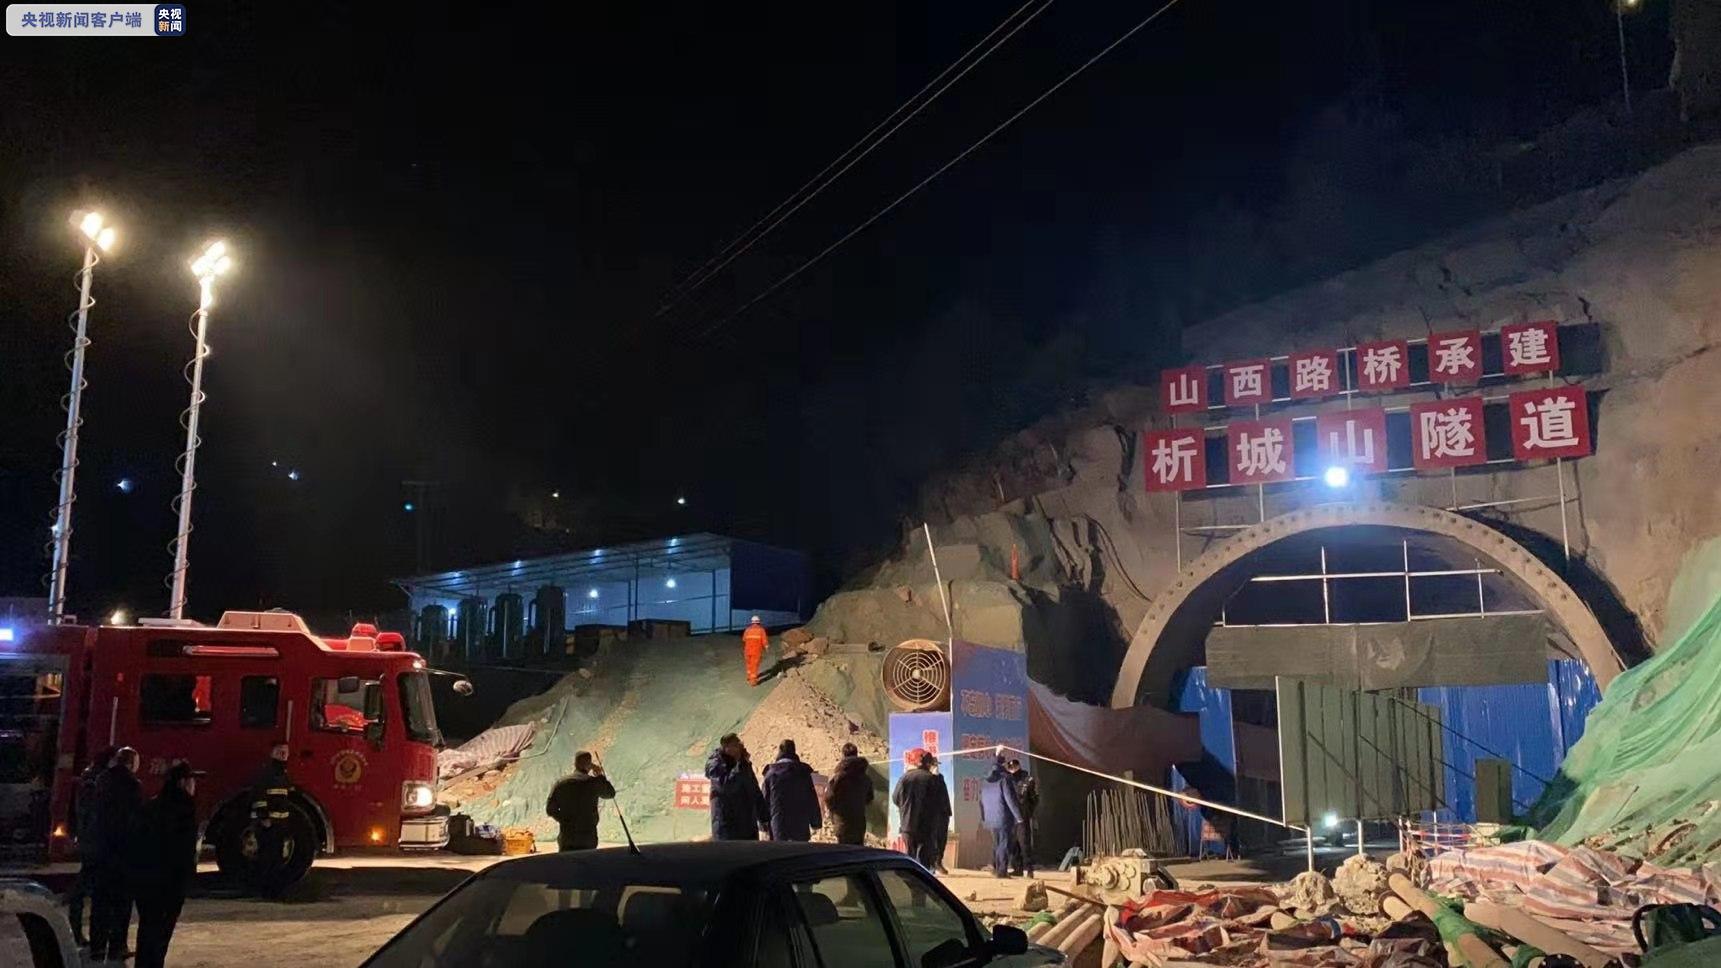 山西臨汾飯店倒塌事故 增至29人死亡 | Now 新聞